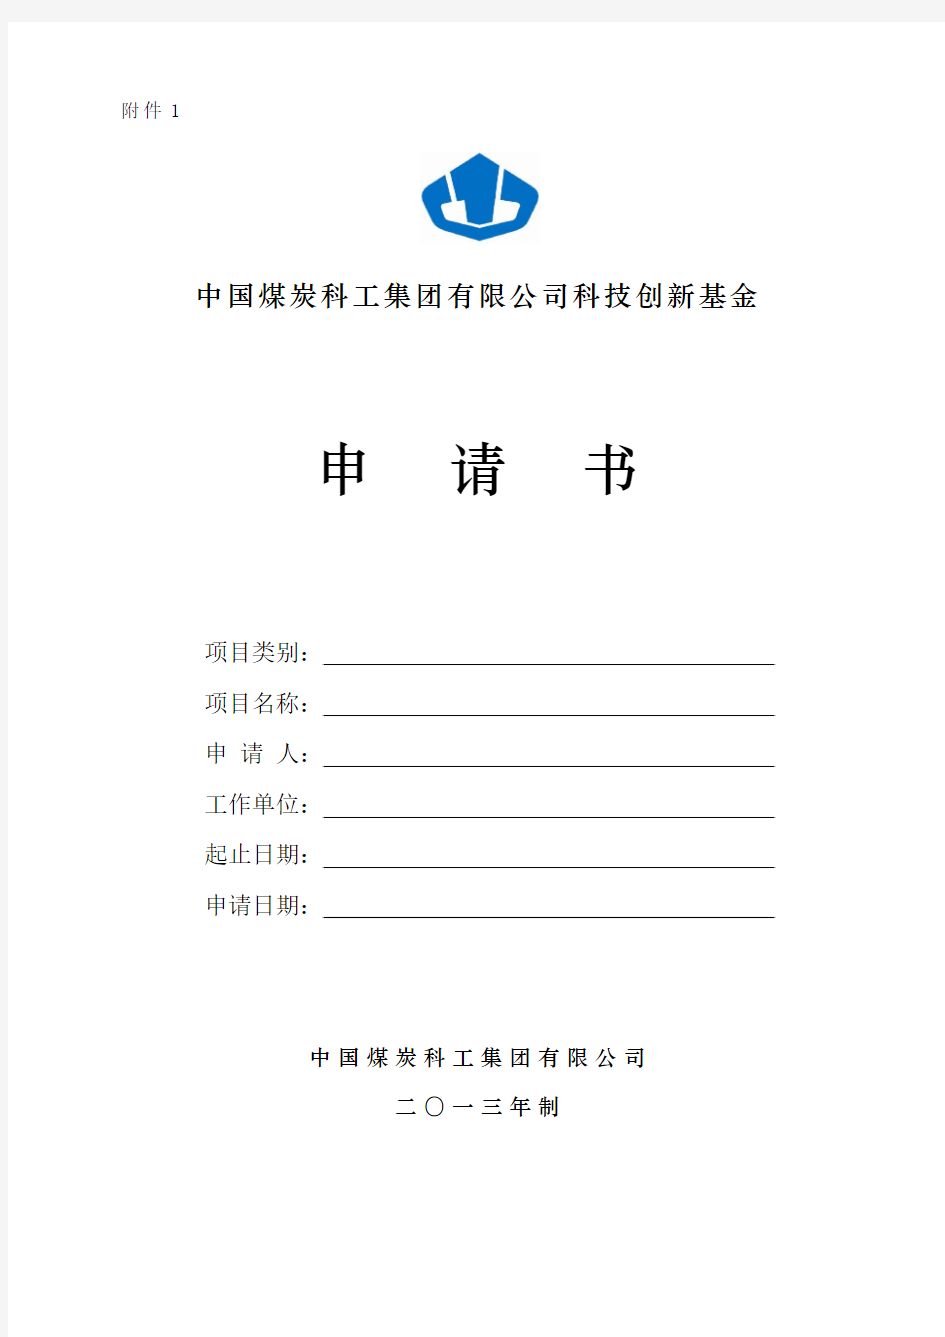 中国煤炭科工集团科技创新基金申请书